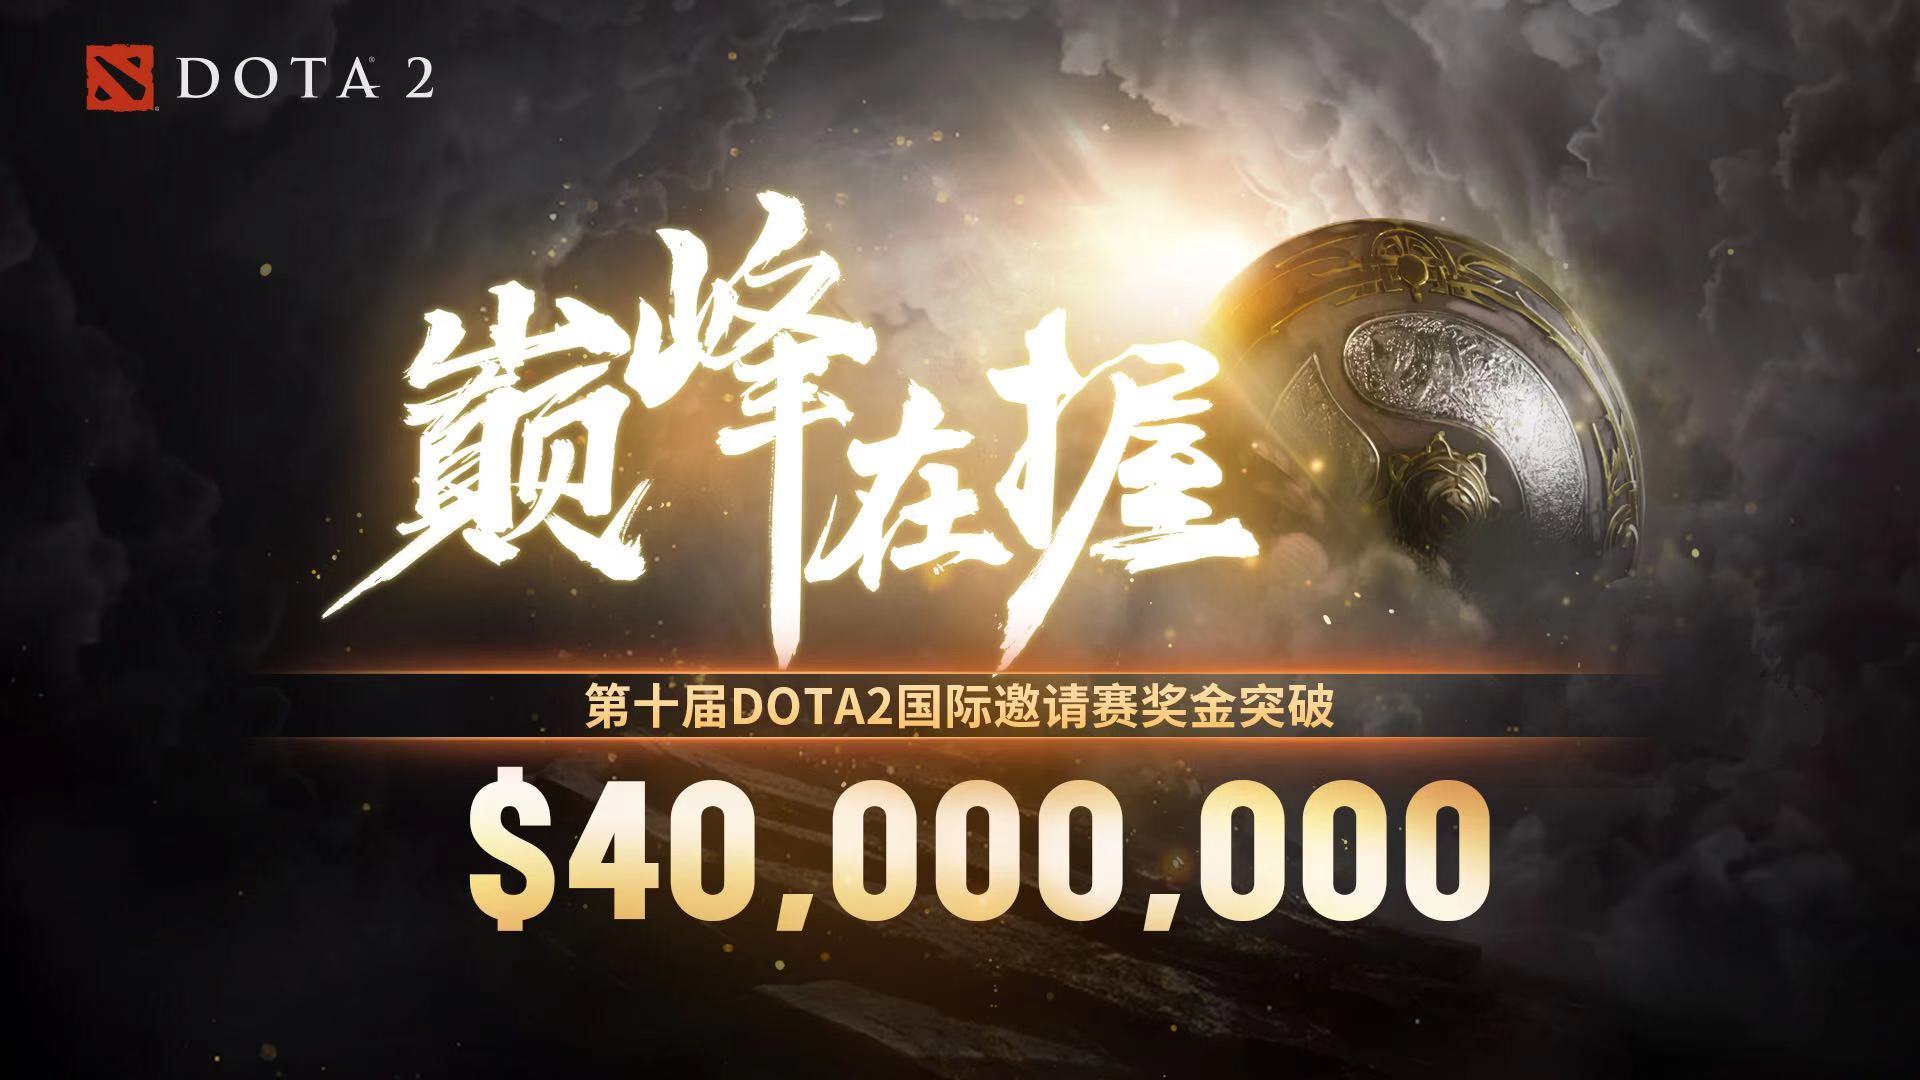 《Dota2》Ti10总奖金突破四千万美元 创下新记录